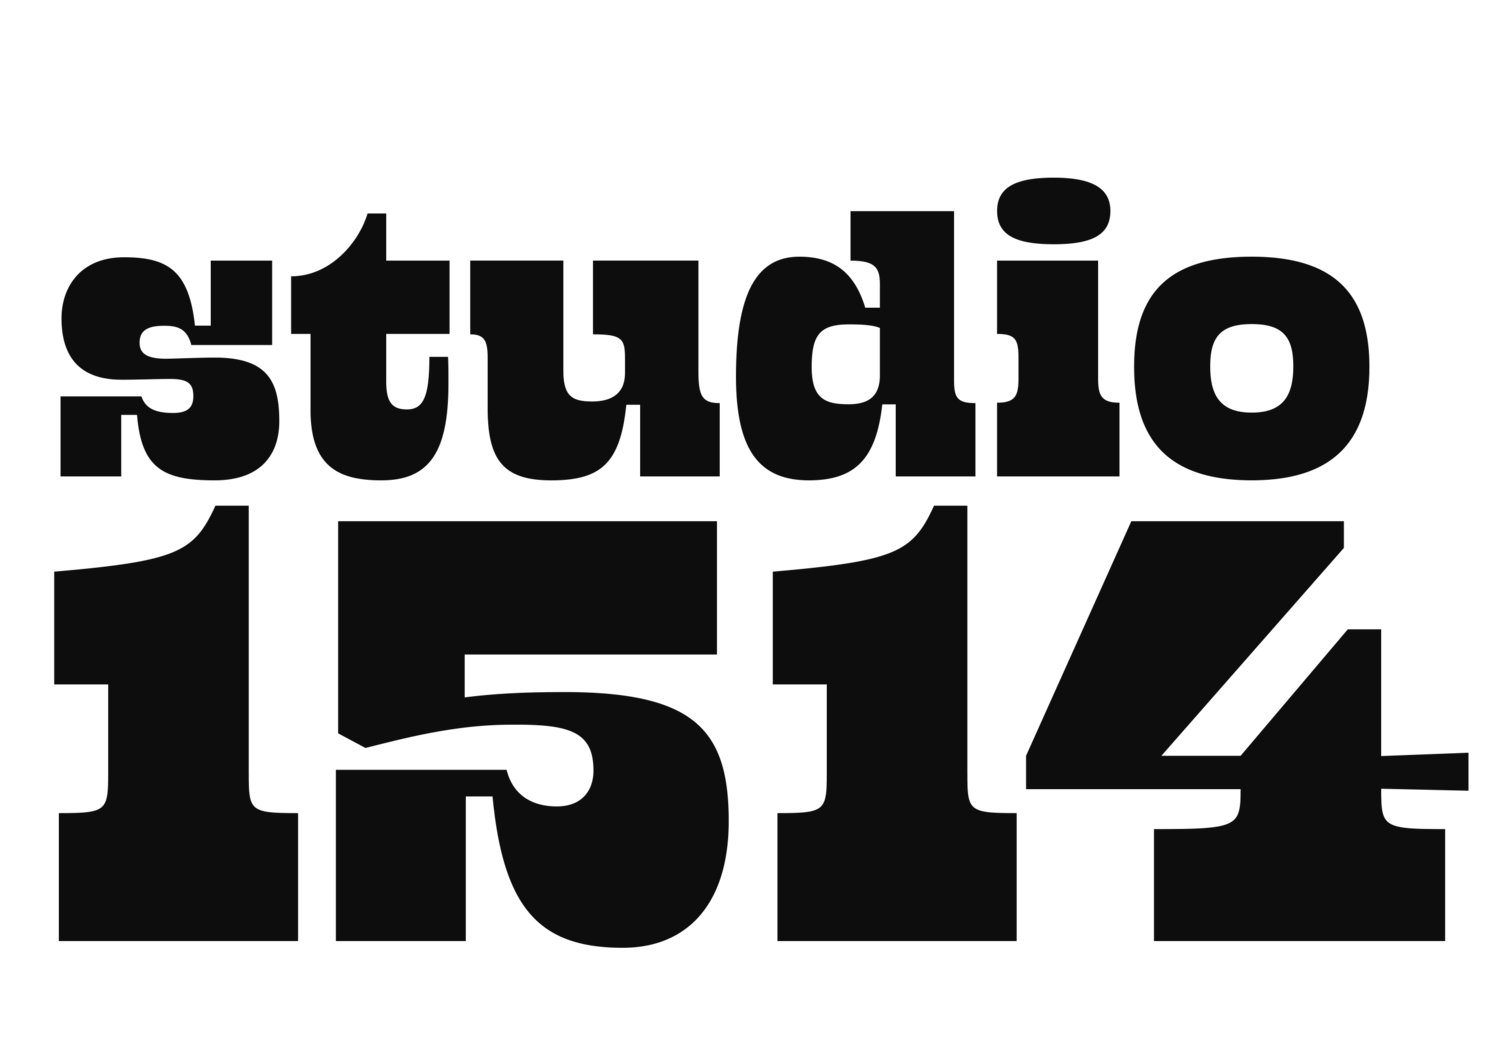 studio1514